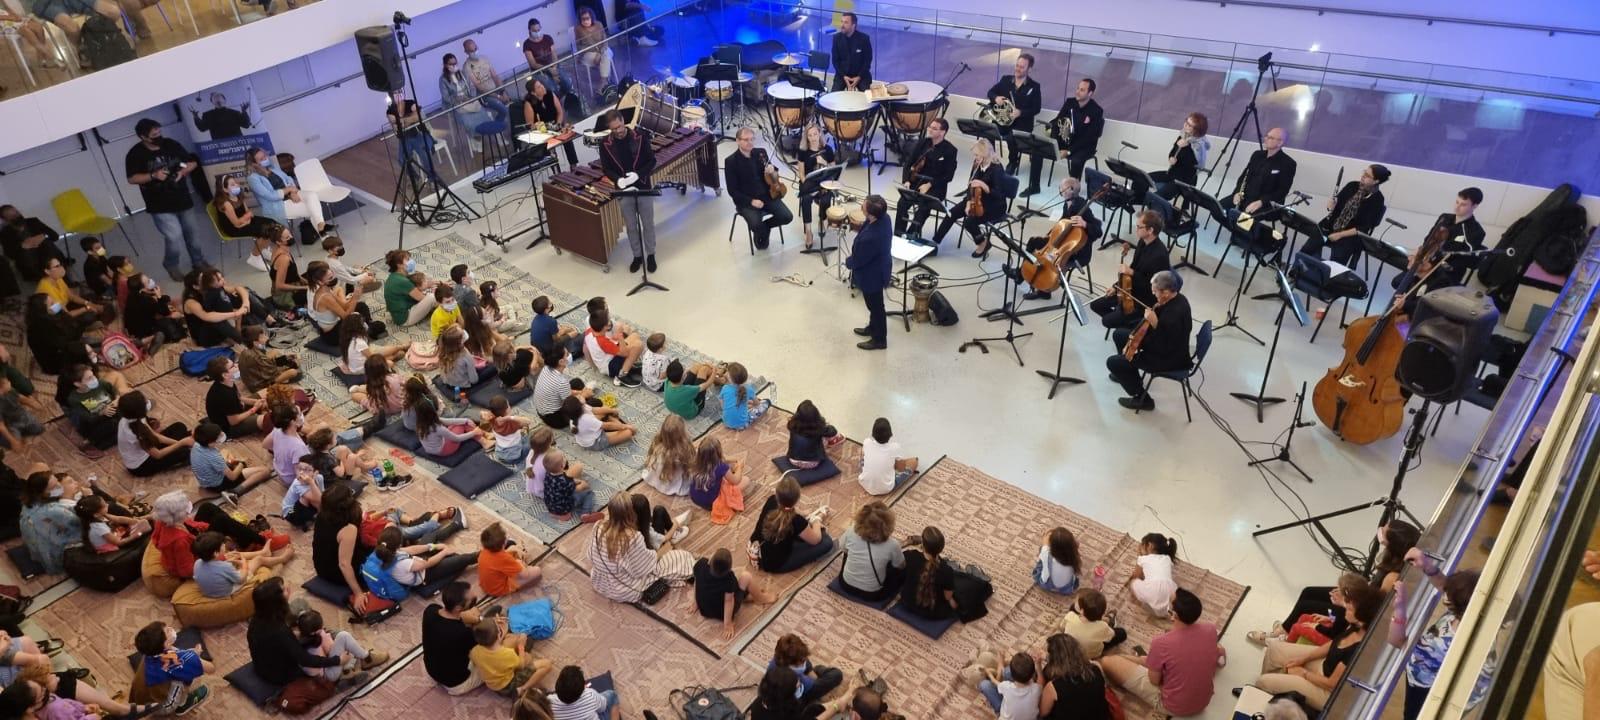 ממשיכים לנגן, צומחים מחדש: התזמורת הסימפונית הישראלית ראשון לציון תערוך יום פעילות קהילתי-מוזיקלי מיוחד לילדים המפונים ומשפחותיהם ב-Ono music  בקריה האקדמית אונו